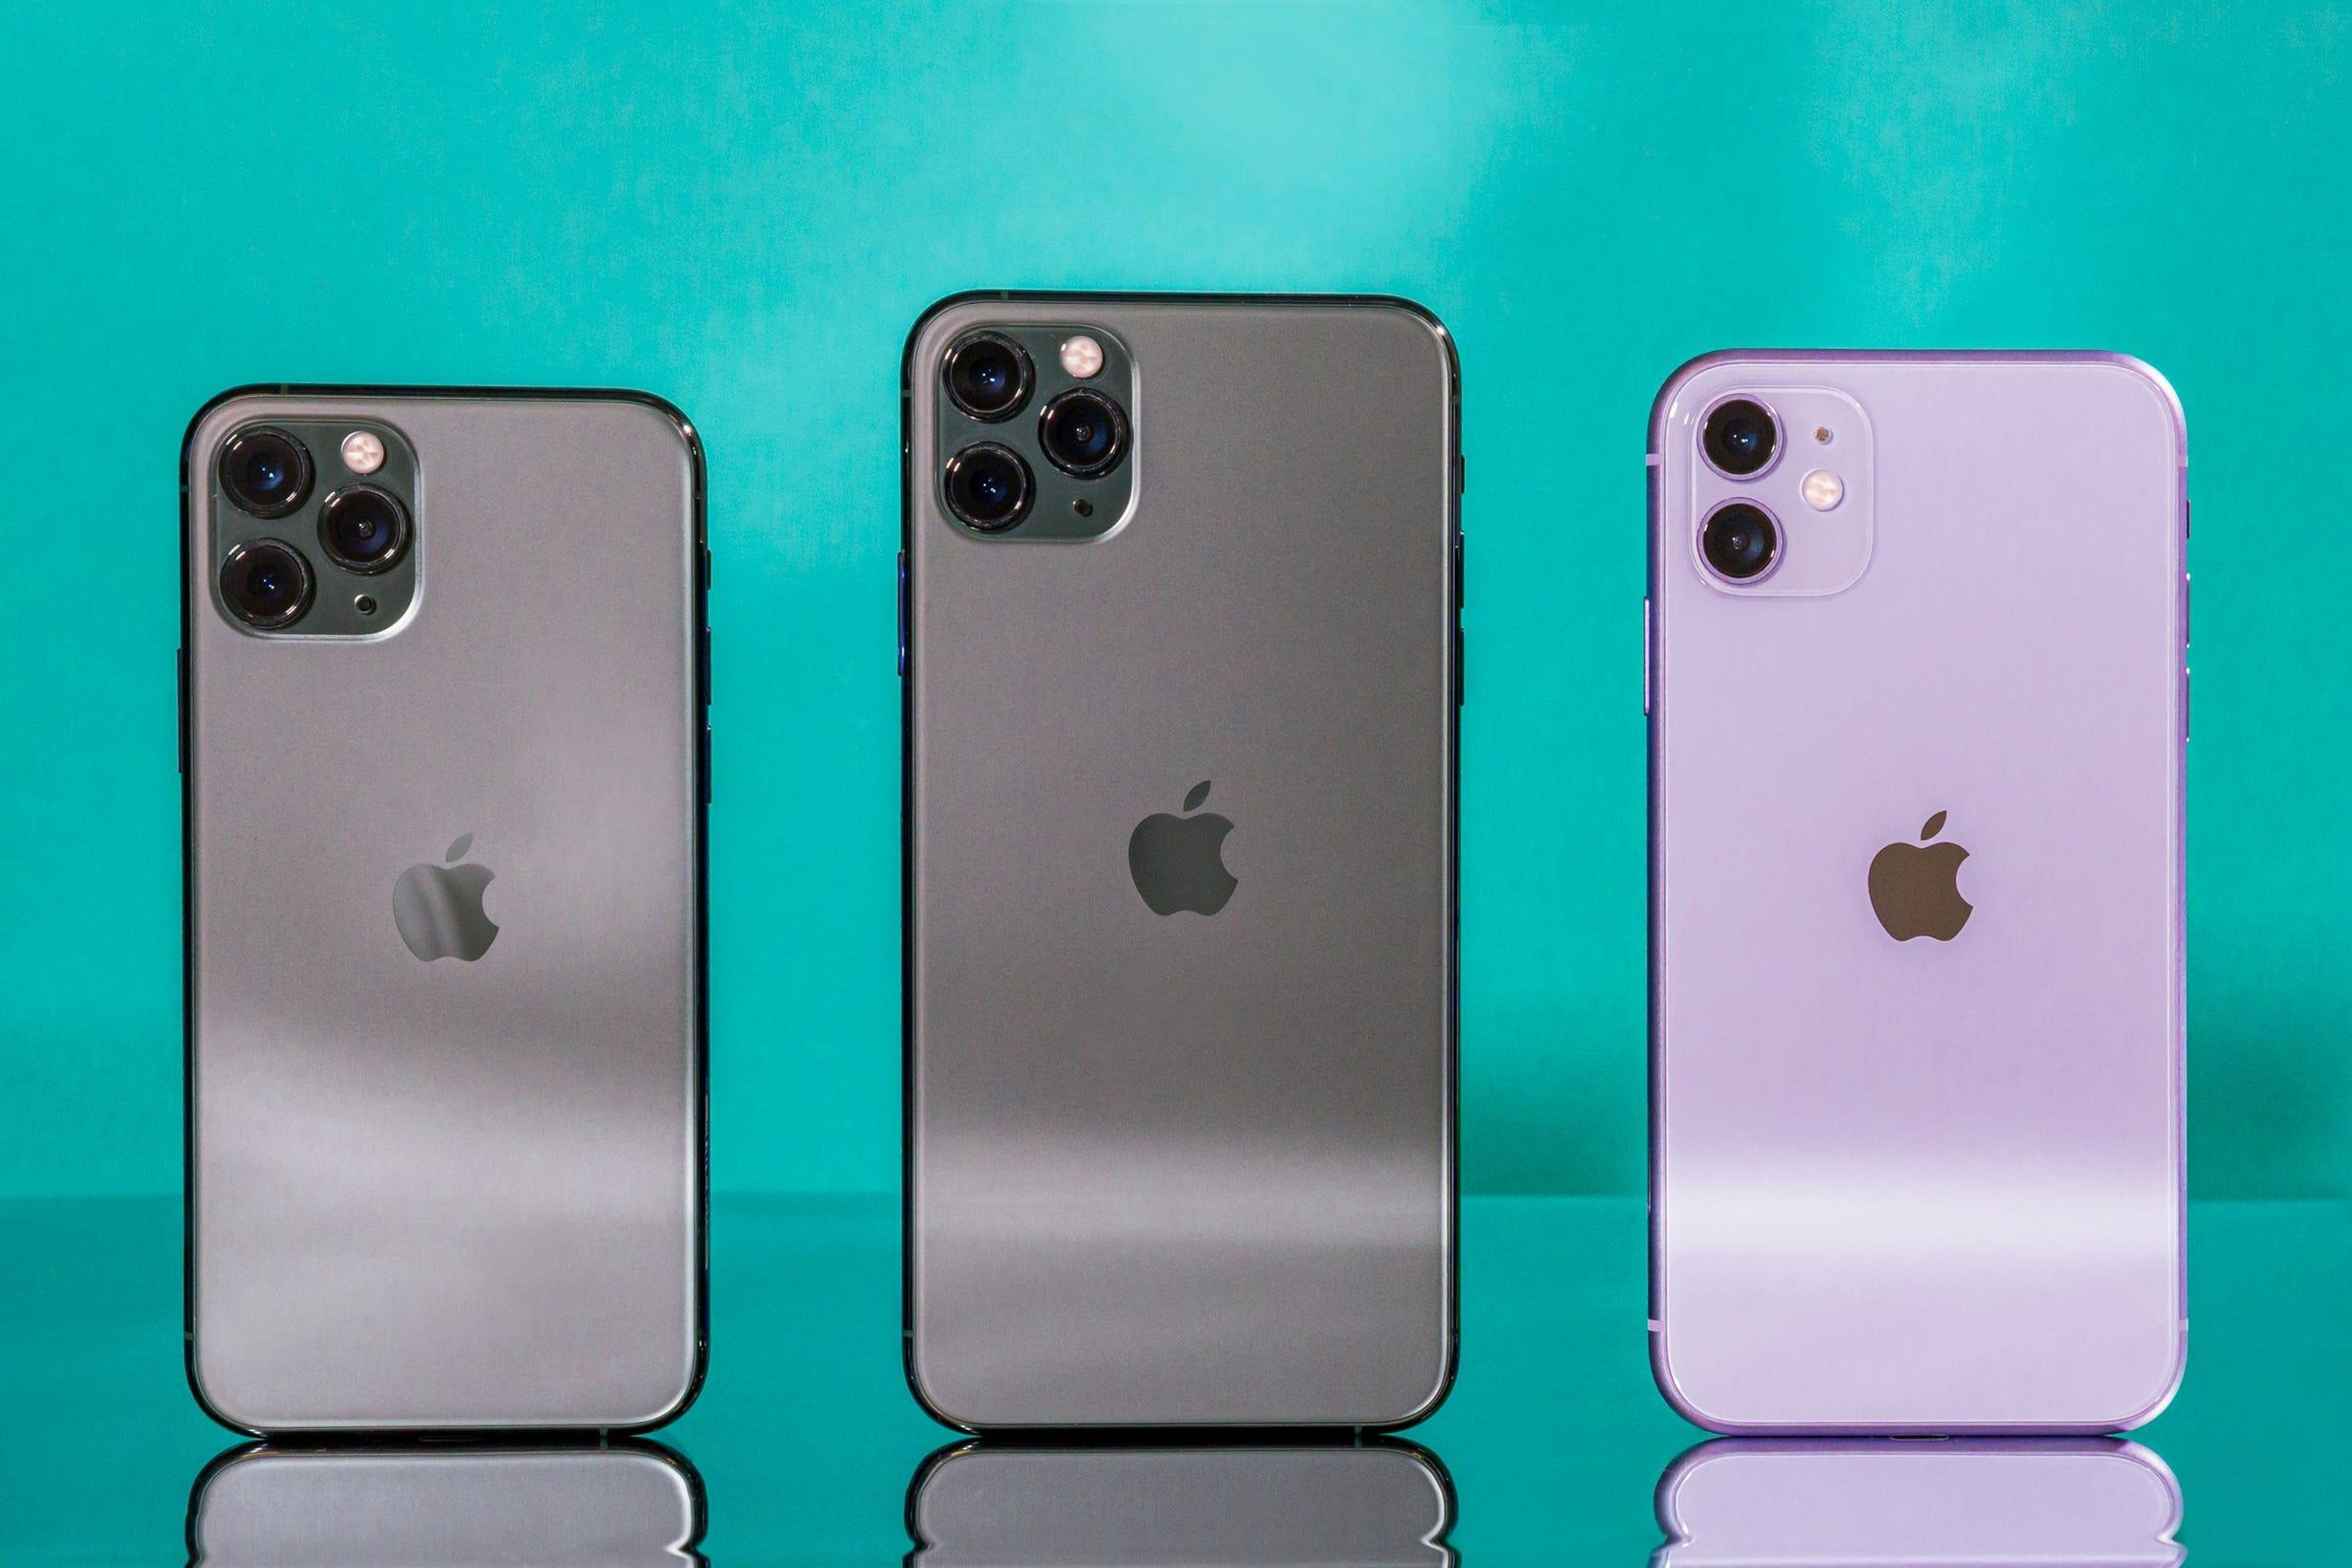 Estas son las predicciones sobre el nuevo iPhone 13 de Apple